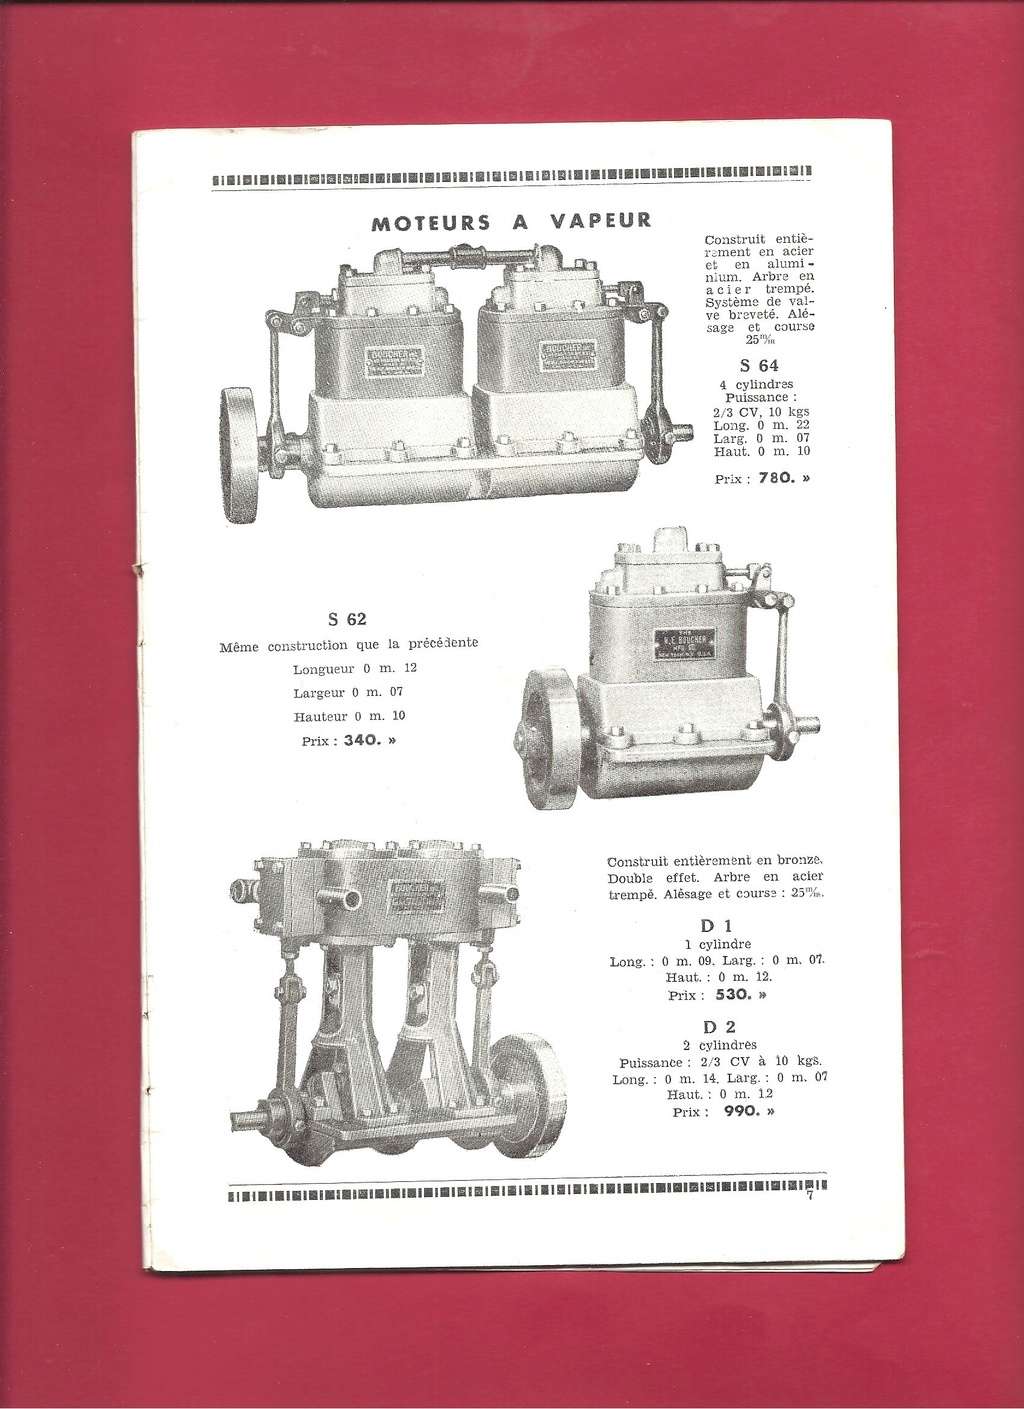 [NOS MAQUETTES 1938-1939] Catalogue 1938-1939 Nos_ma16